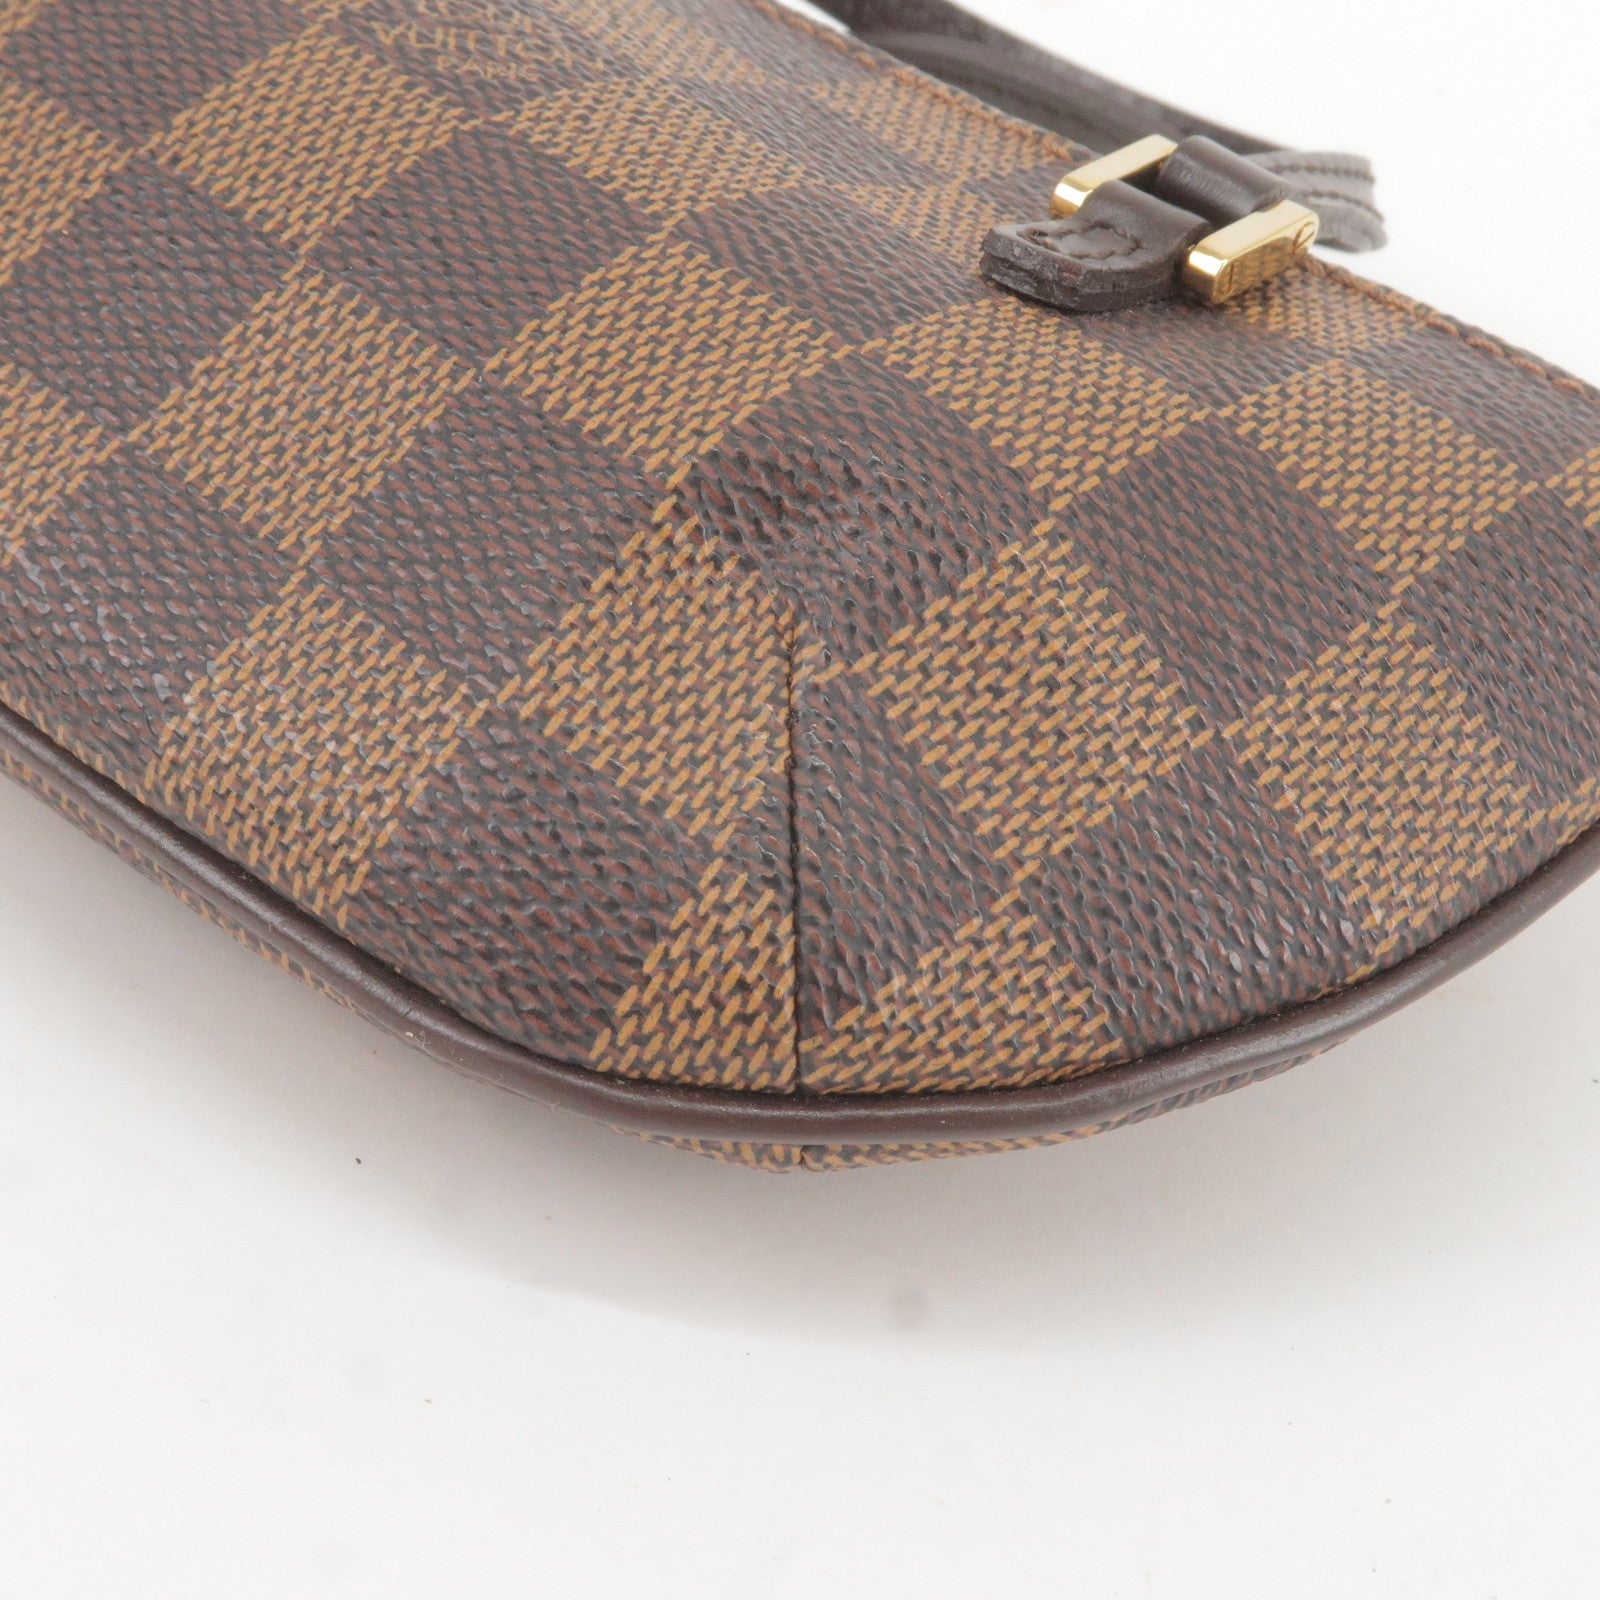 Shop Louis Vuitton DAMIER AZUR Daily pouch (N60260) by MUTIARA